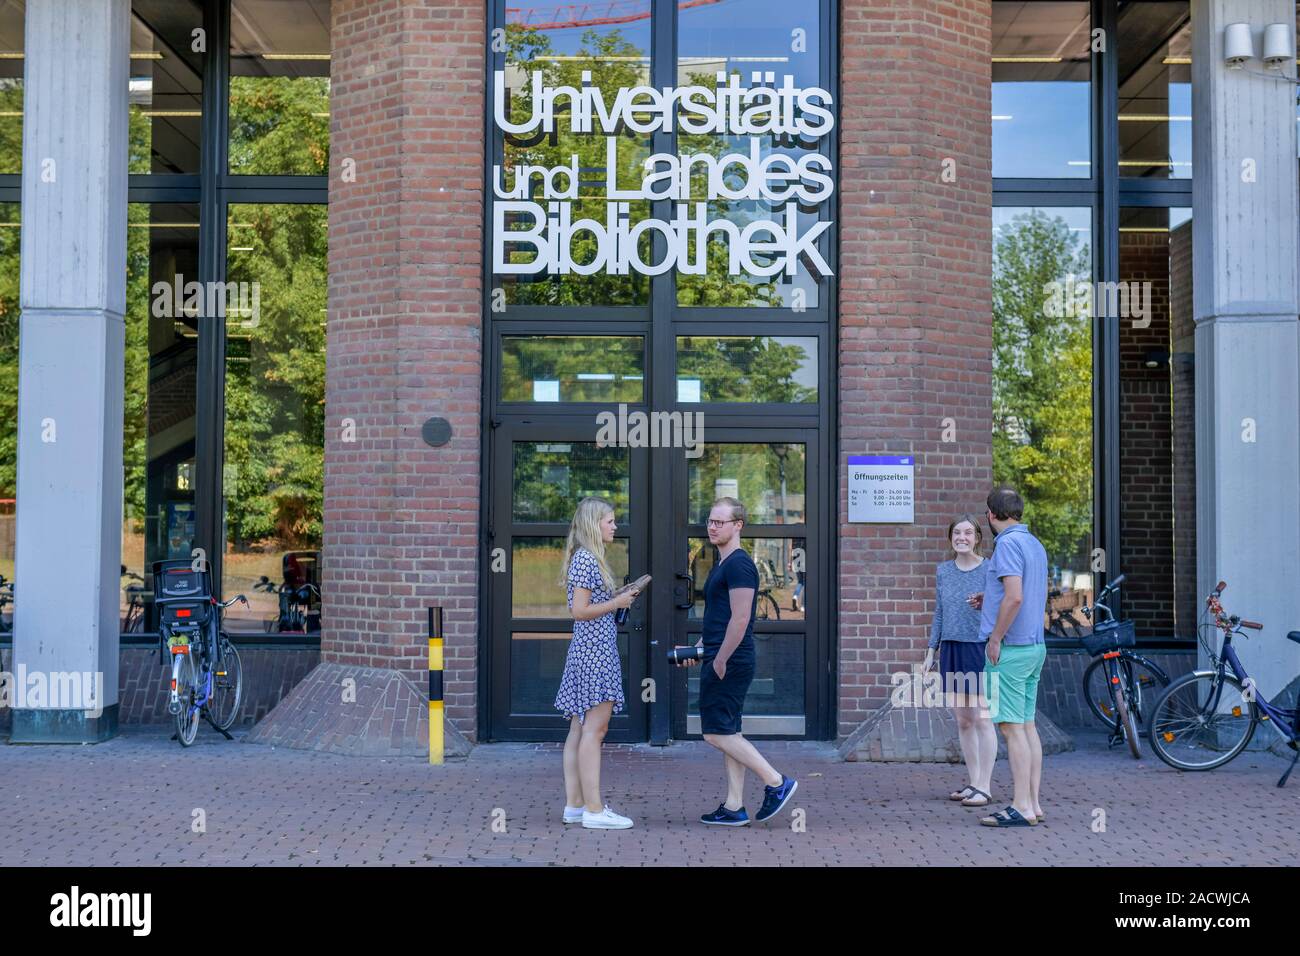 Universitäts- und Landesbibliothek, Heinrich-Heine-Universität,  Universitätsstraße, Düsseldorf, Nordrhein-Westfalen, Deutschland Stock  Photo - Alamy